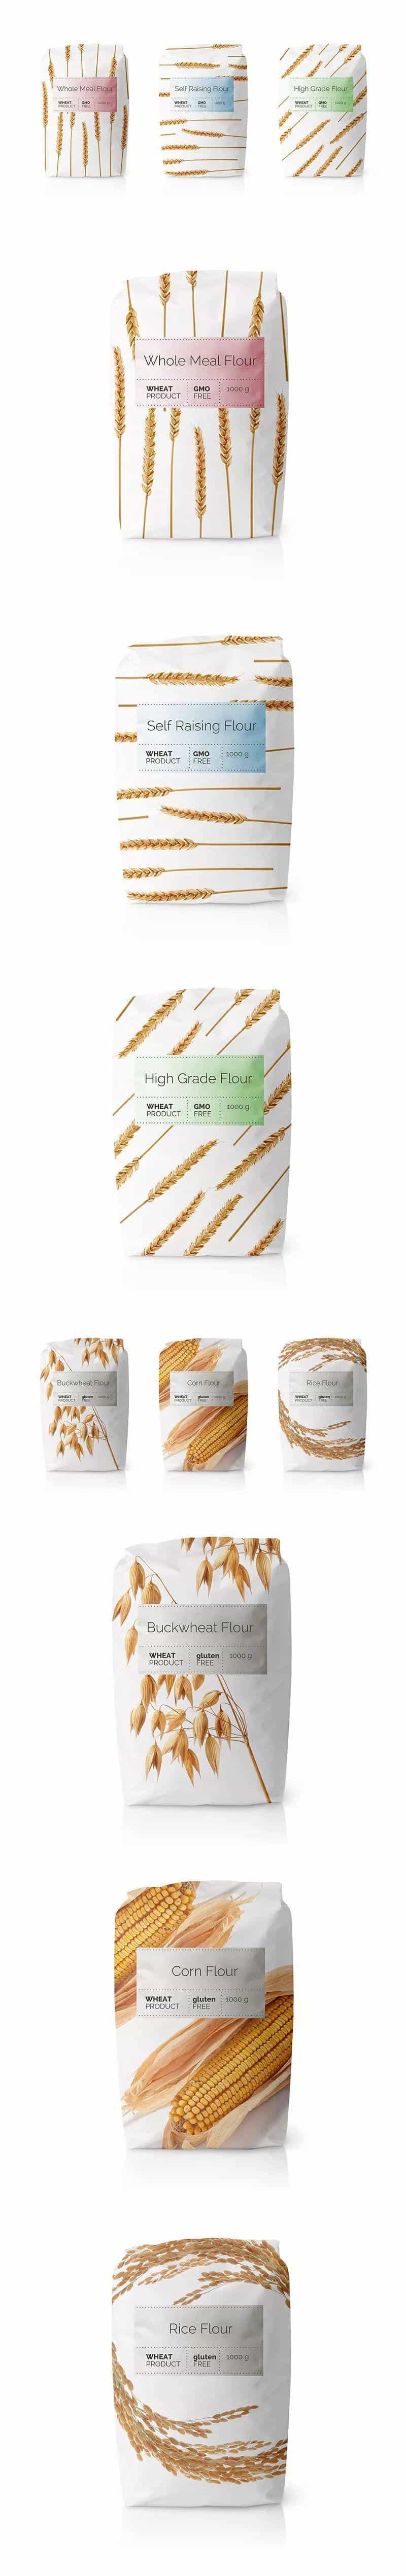 包装丨面粉类包装设计分享  第2张